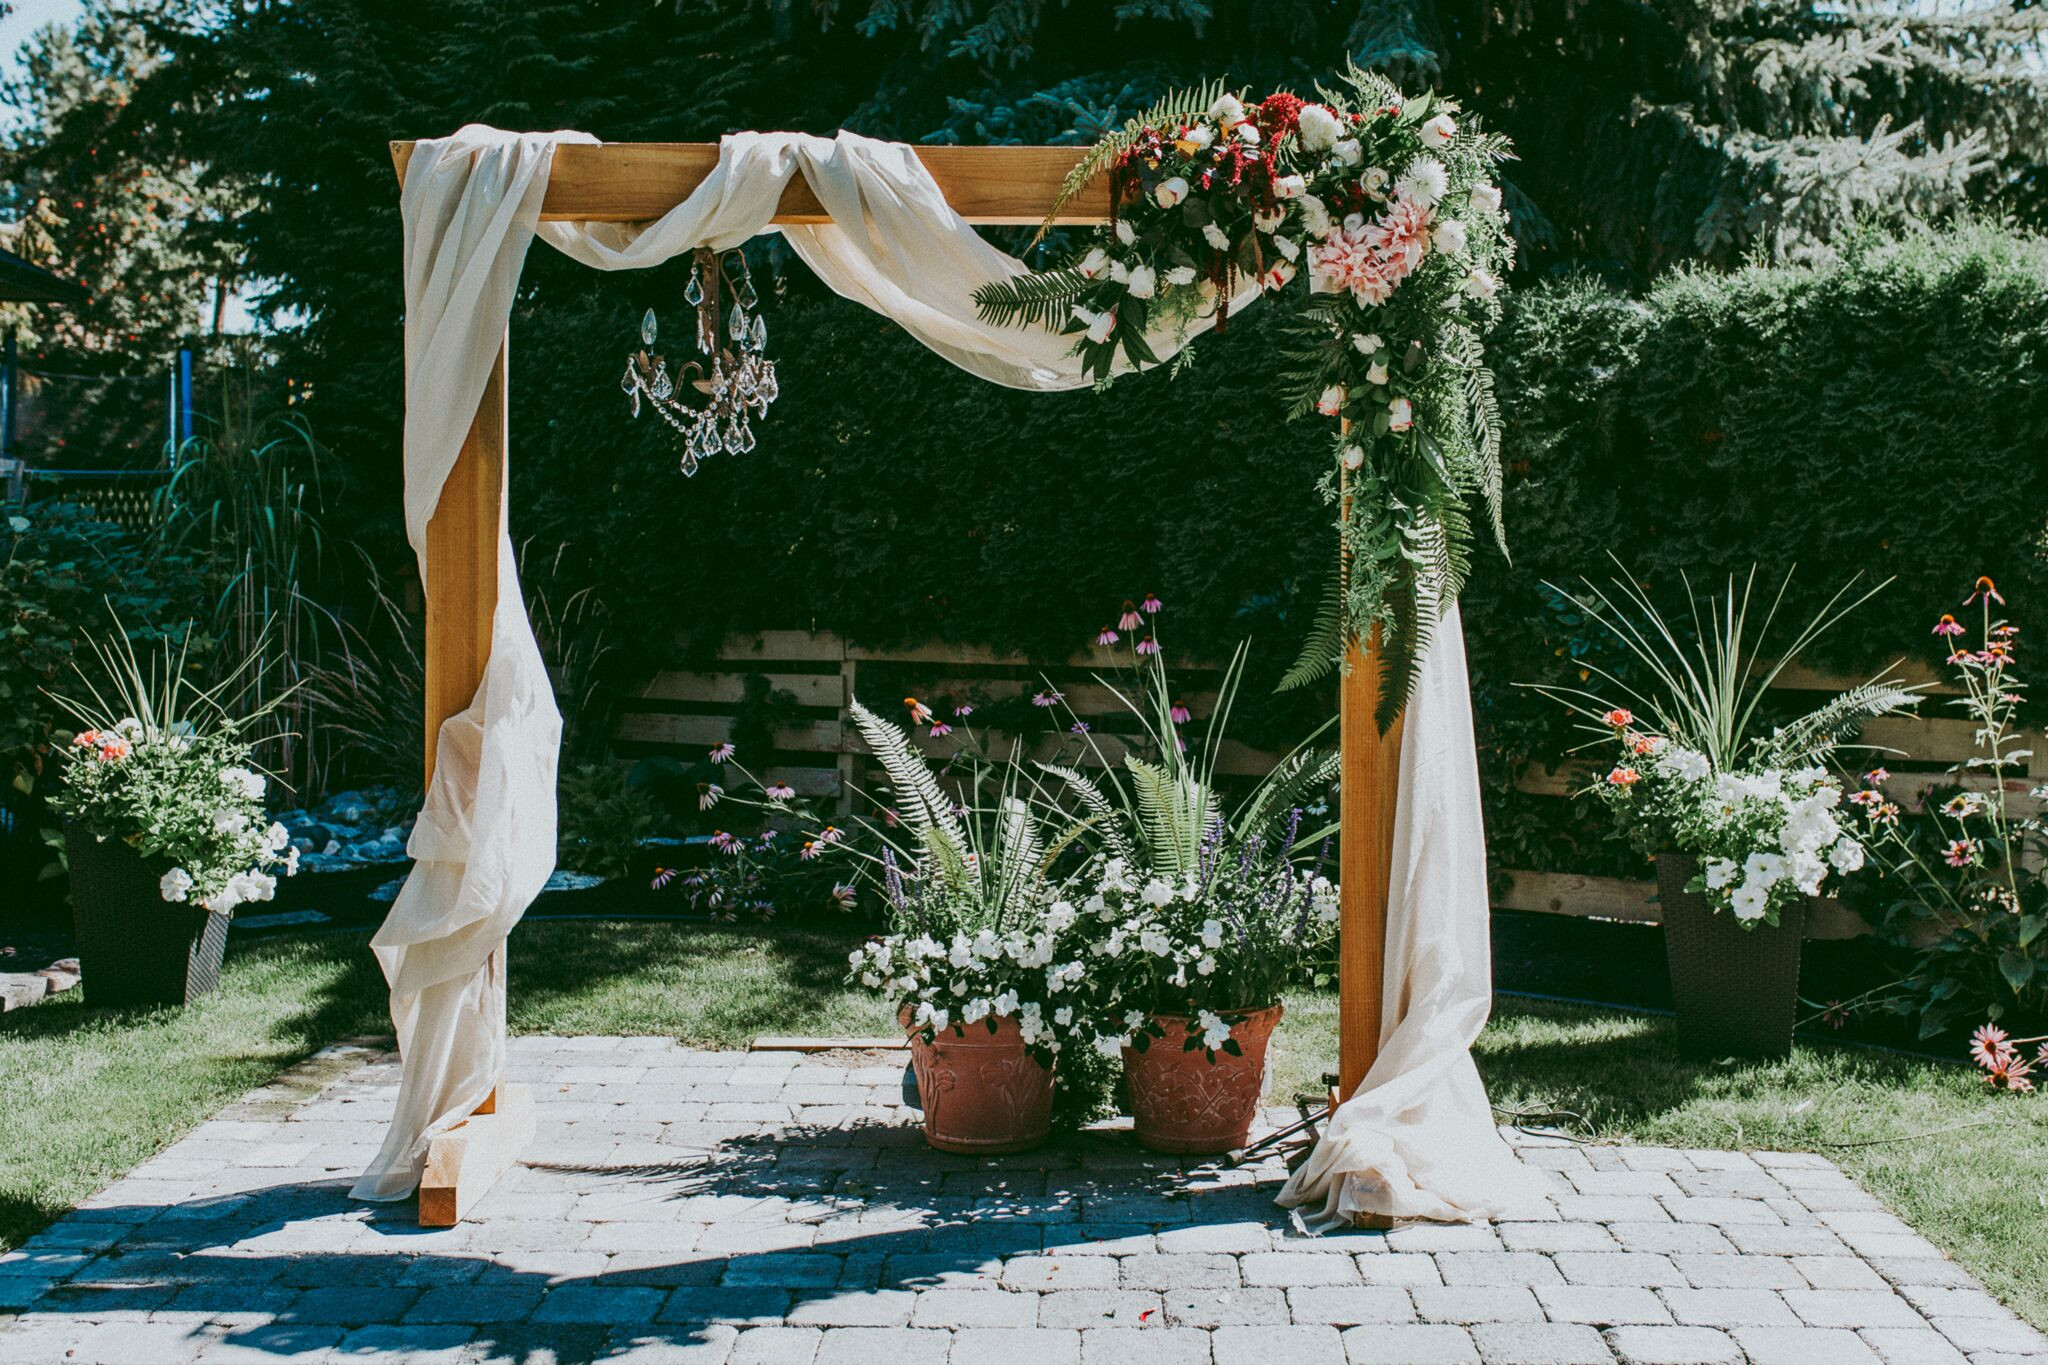 DIY Wood Wedding Arch
 DIY Wooden Wedding Arch With Flower Garland